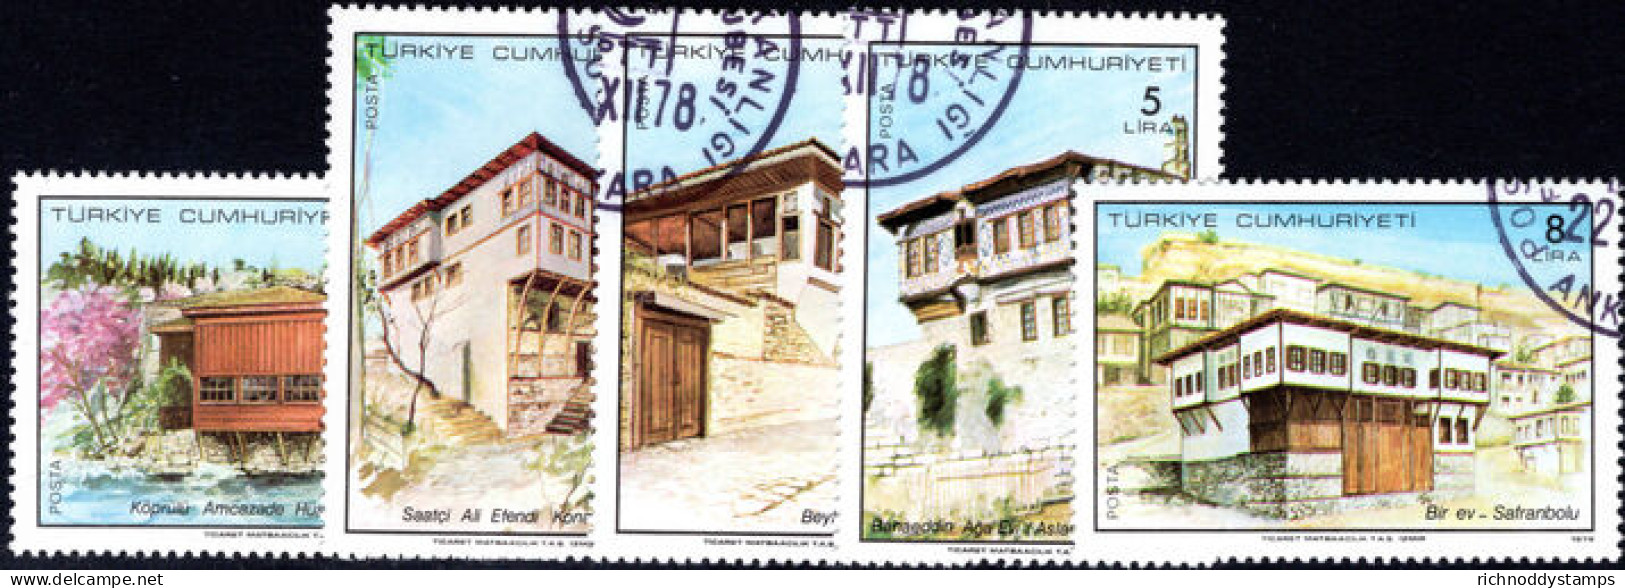 Turkey 1978 Traditional Turkish Houses Fine Used. - Usati